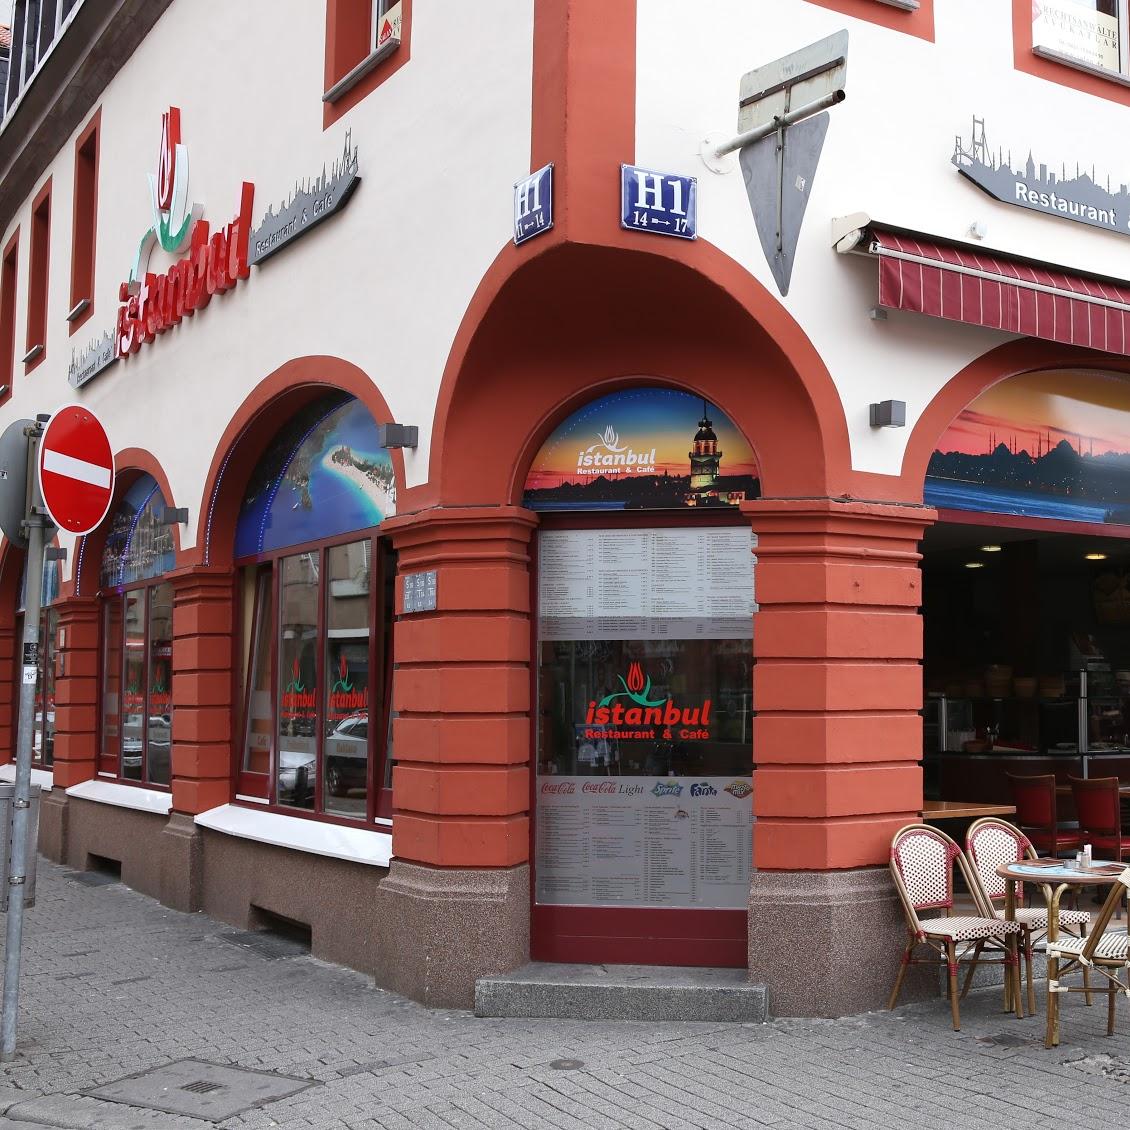 Restaurant "Restaurant Istanbul" in Mannheim